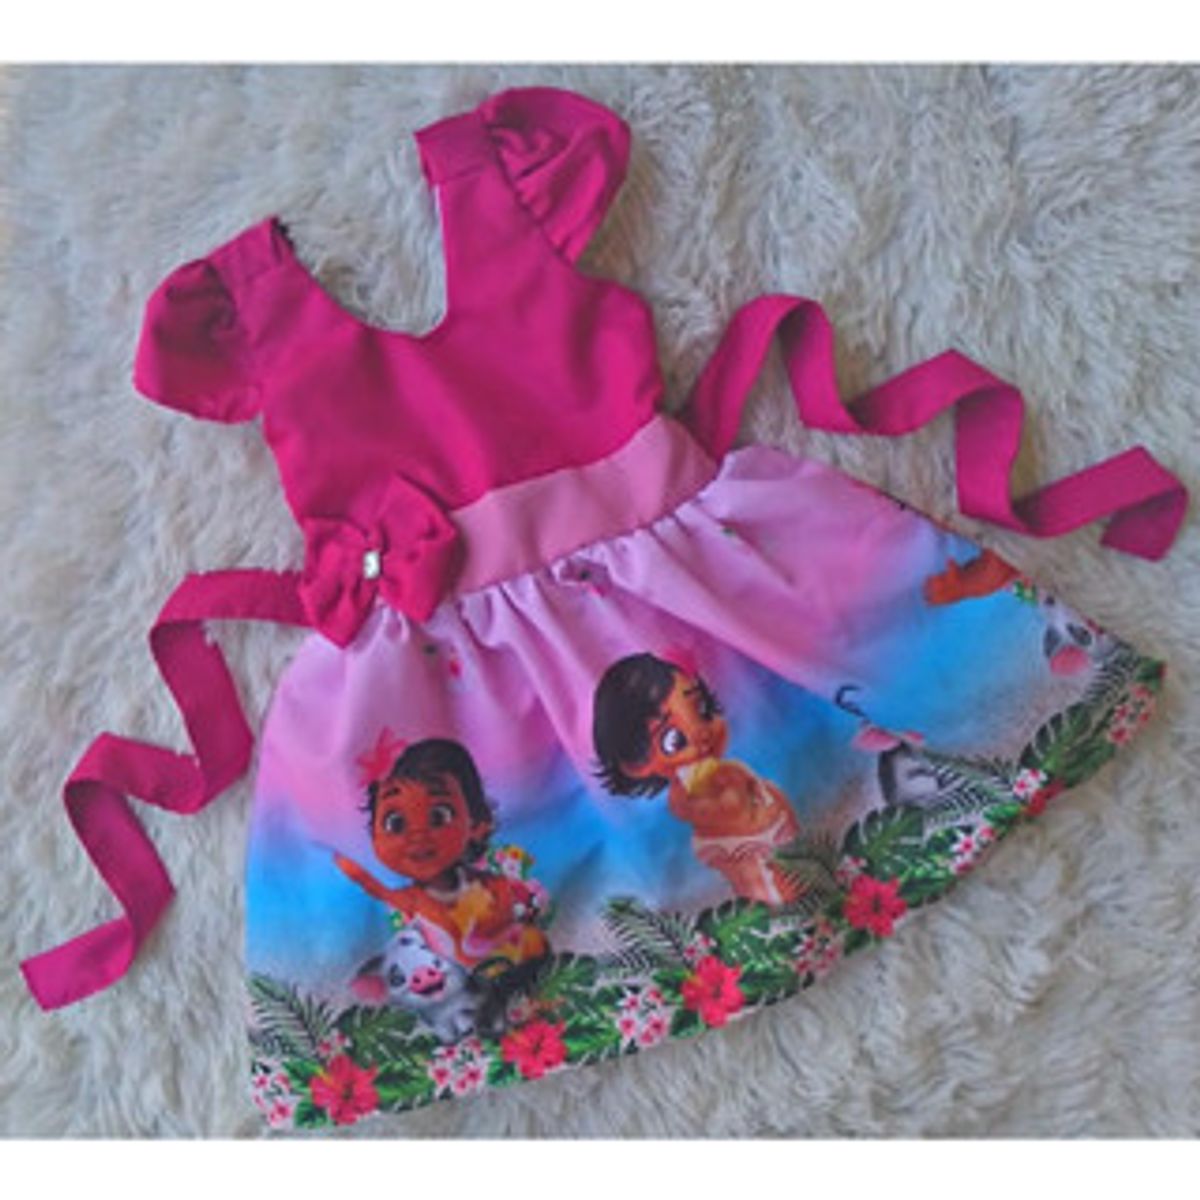 Vestido Temático Infantil Moana Baby Rosa De Luxo 1 A 4 Anos